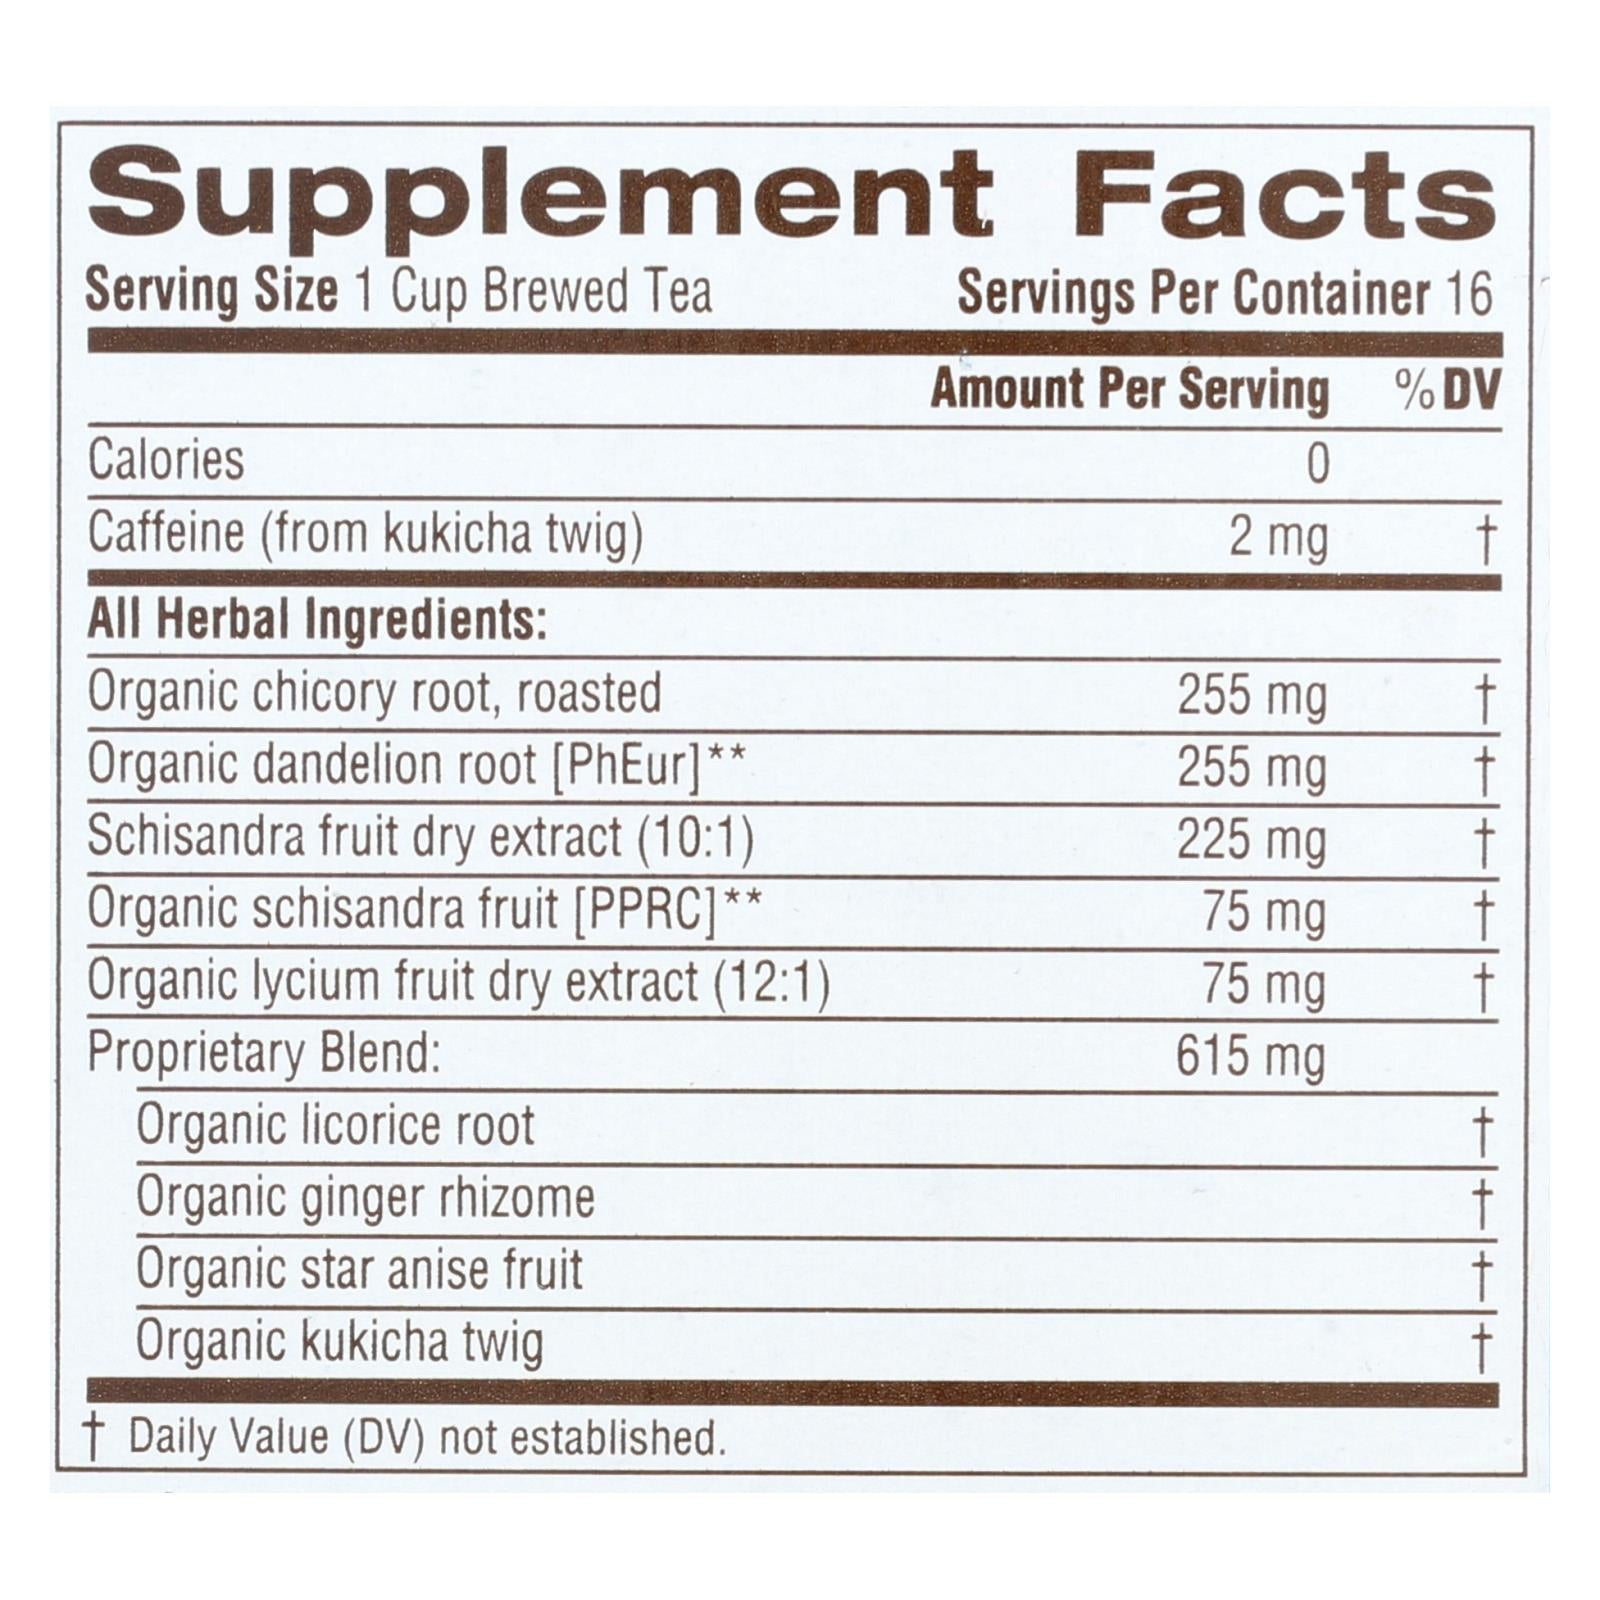 Traditional Medicinals Everyday Detox Herbal Tea - 16 Tea Bags